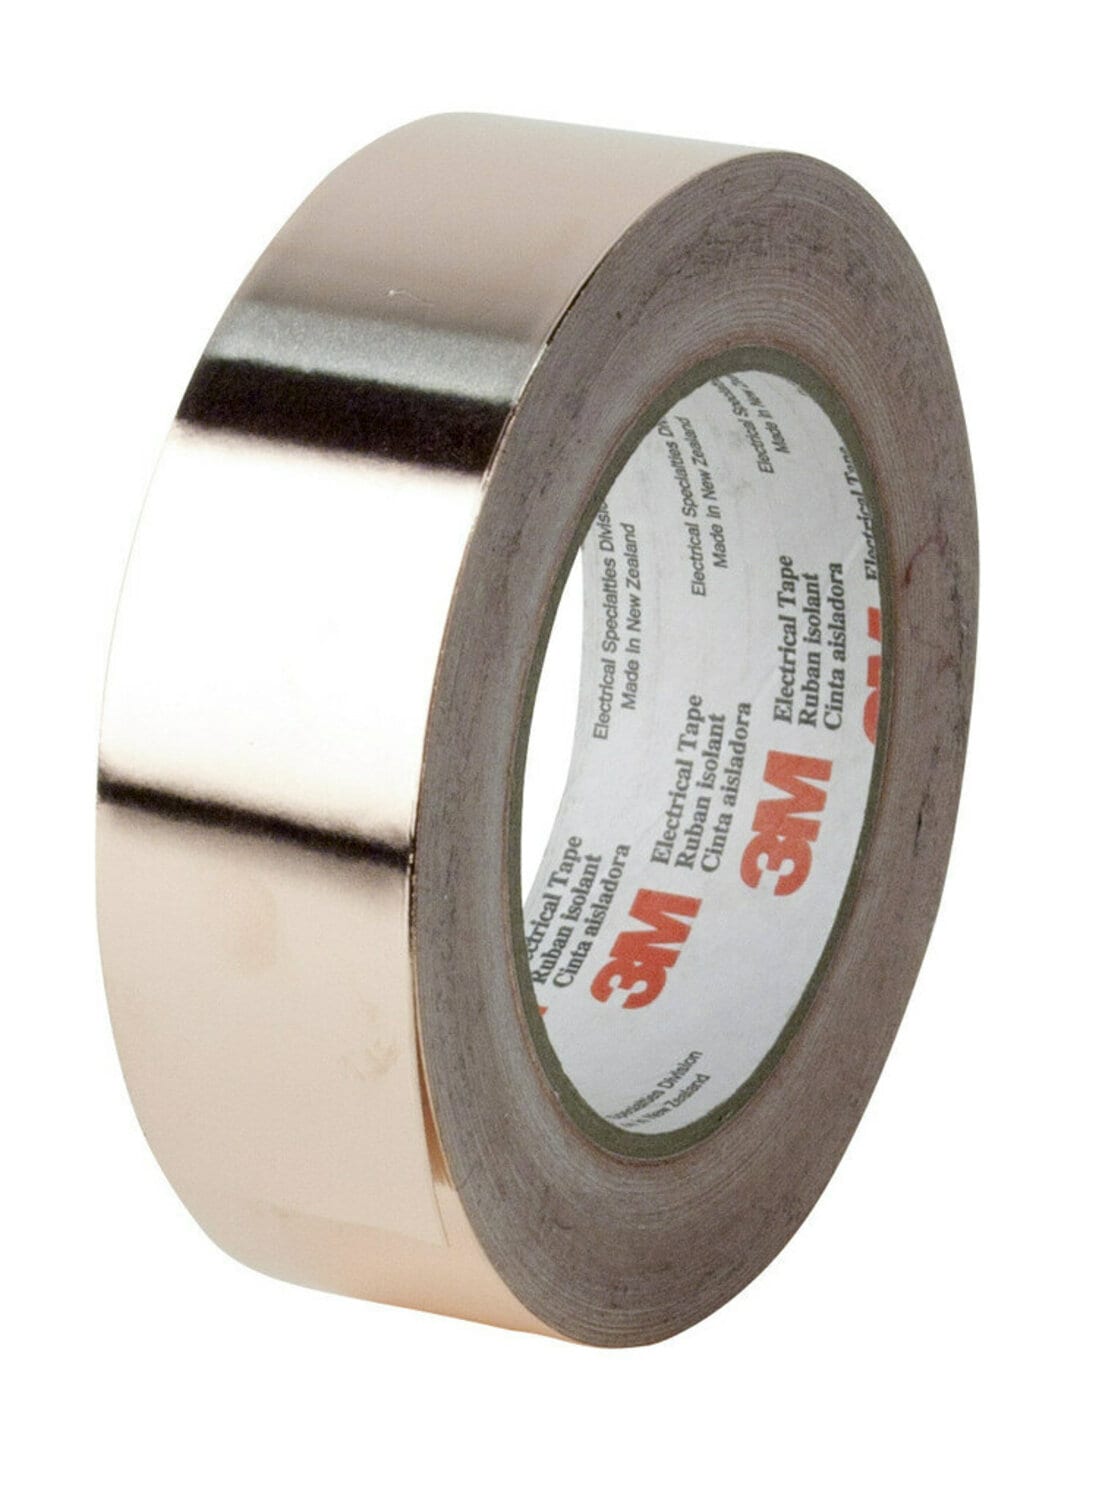 7010304003 - 3M EMI Copper Foil Shielding Tape 1194, 1 in x 36 yd (25,40 mm x 33 m),
9 per case